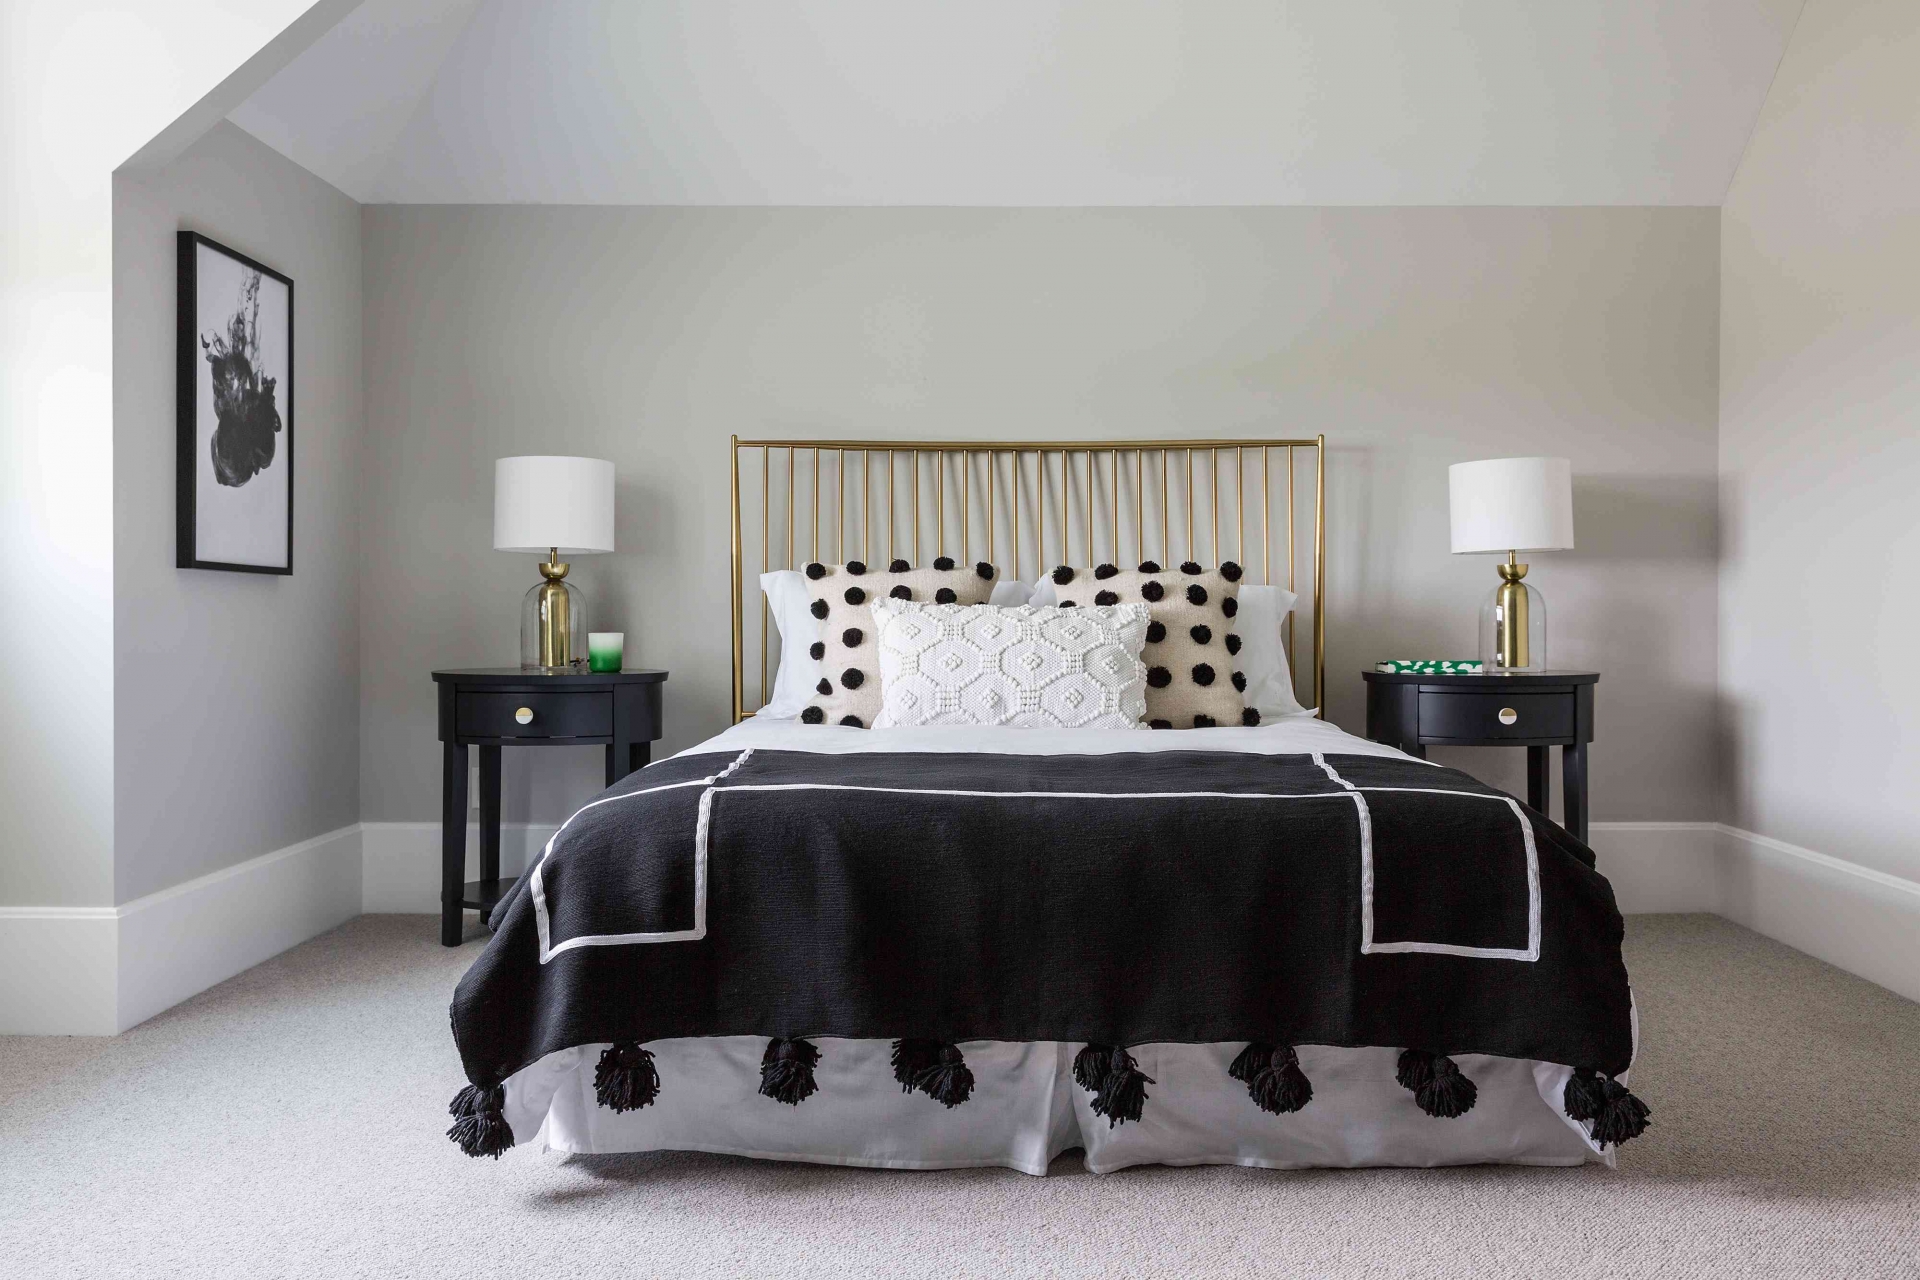 Phòng ngủ đạt được sự cân xứng không chỉ trong cách bố trí nội thất gồm táp đầu giường và đèn ngủ mà còn xuất sắc ở việc lựa chọn 2 gam màu trắng - đen xen kẽ.